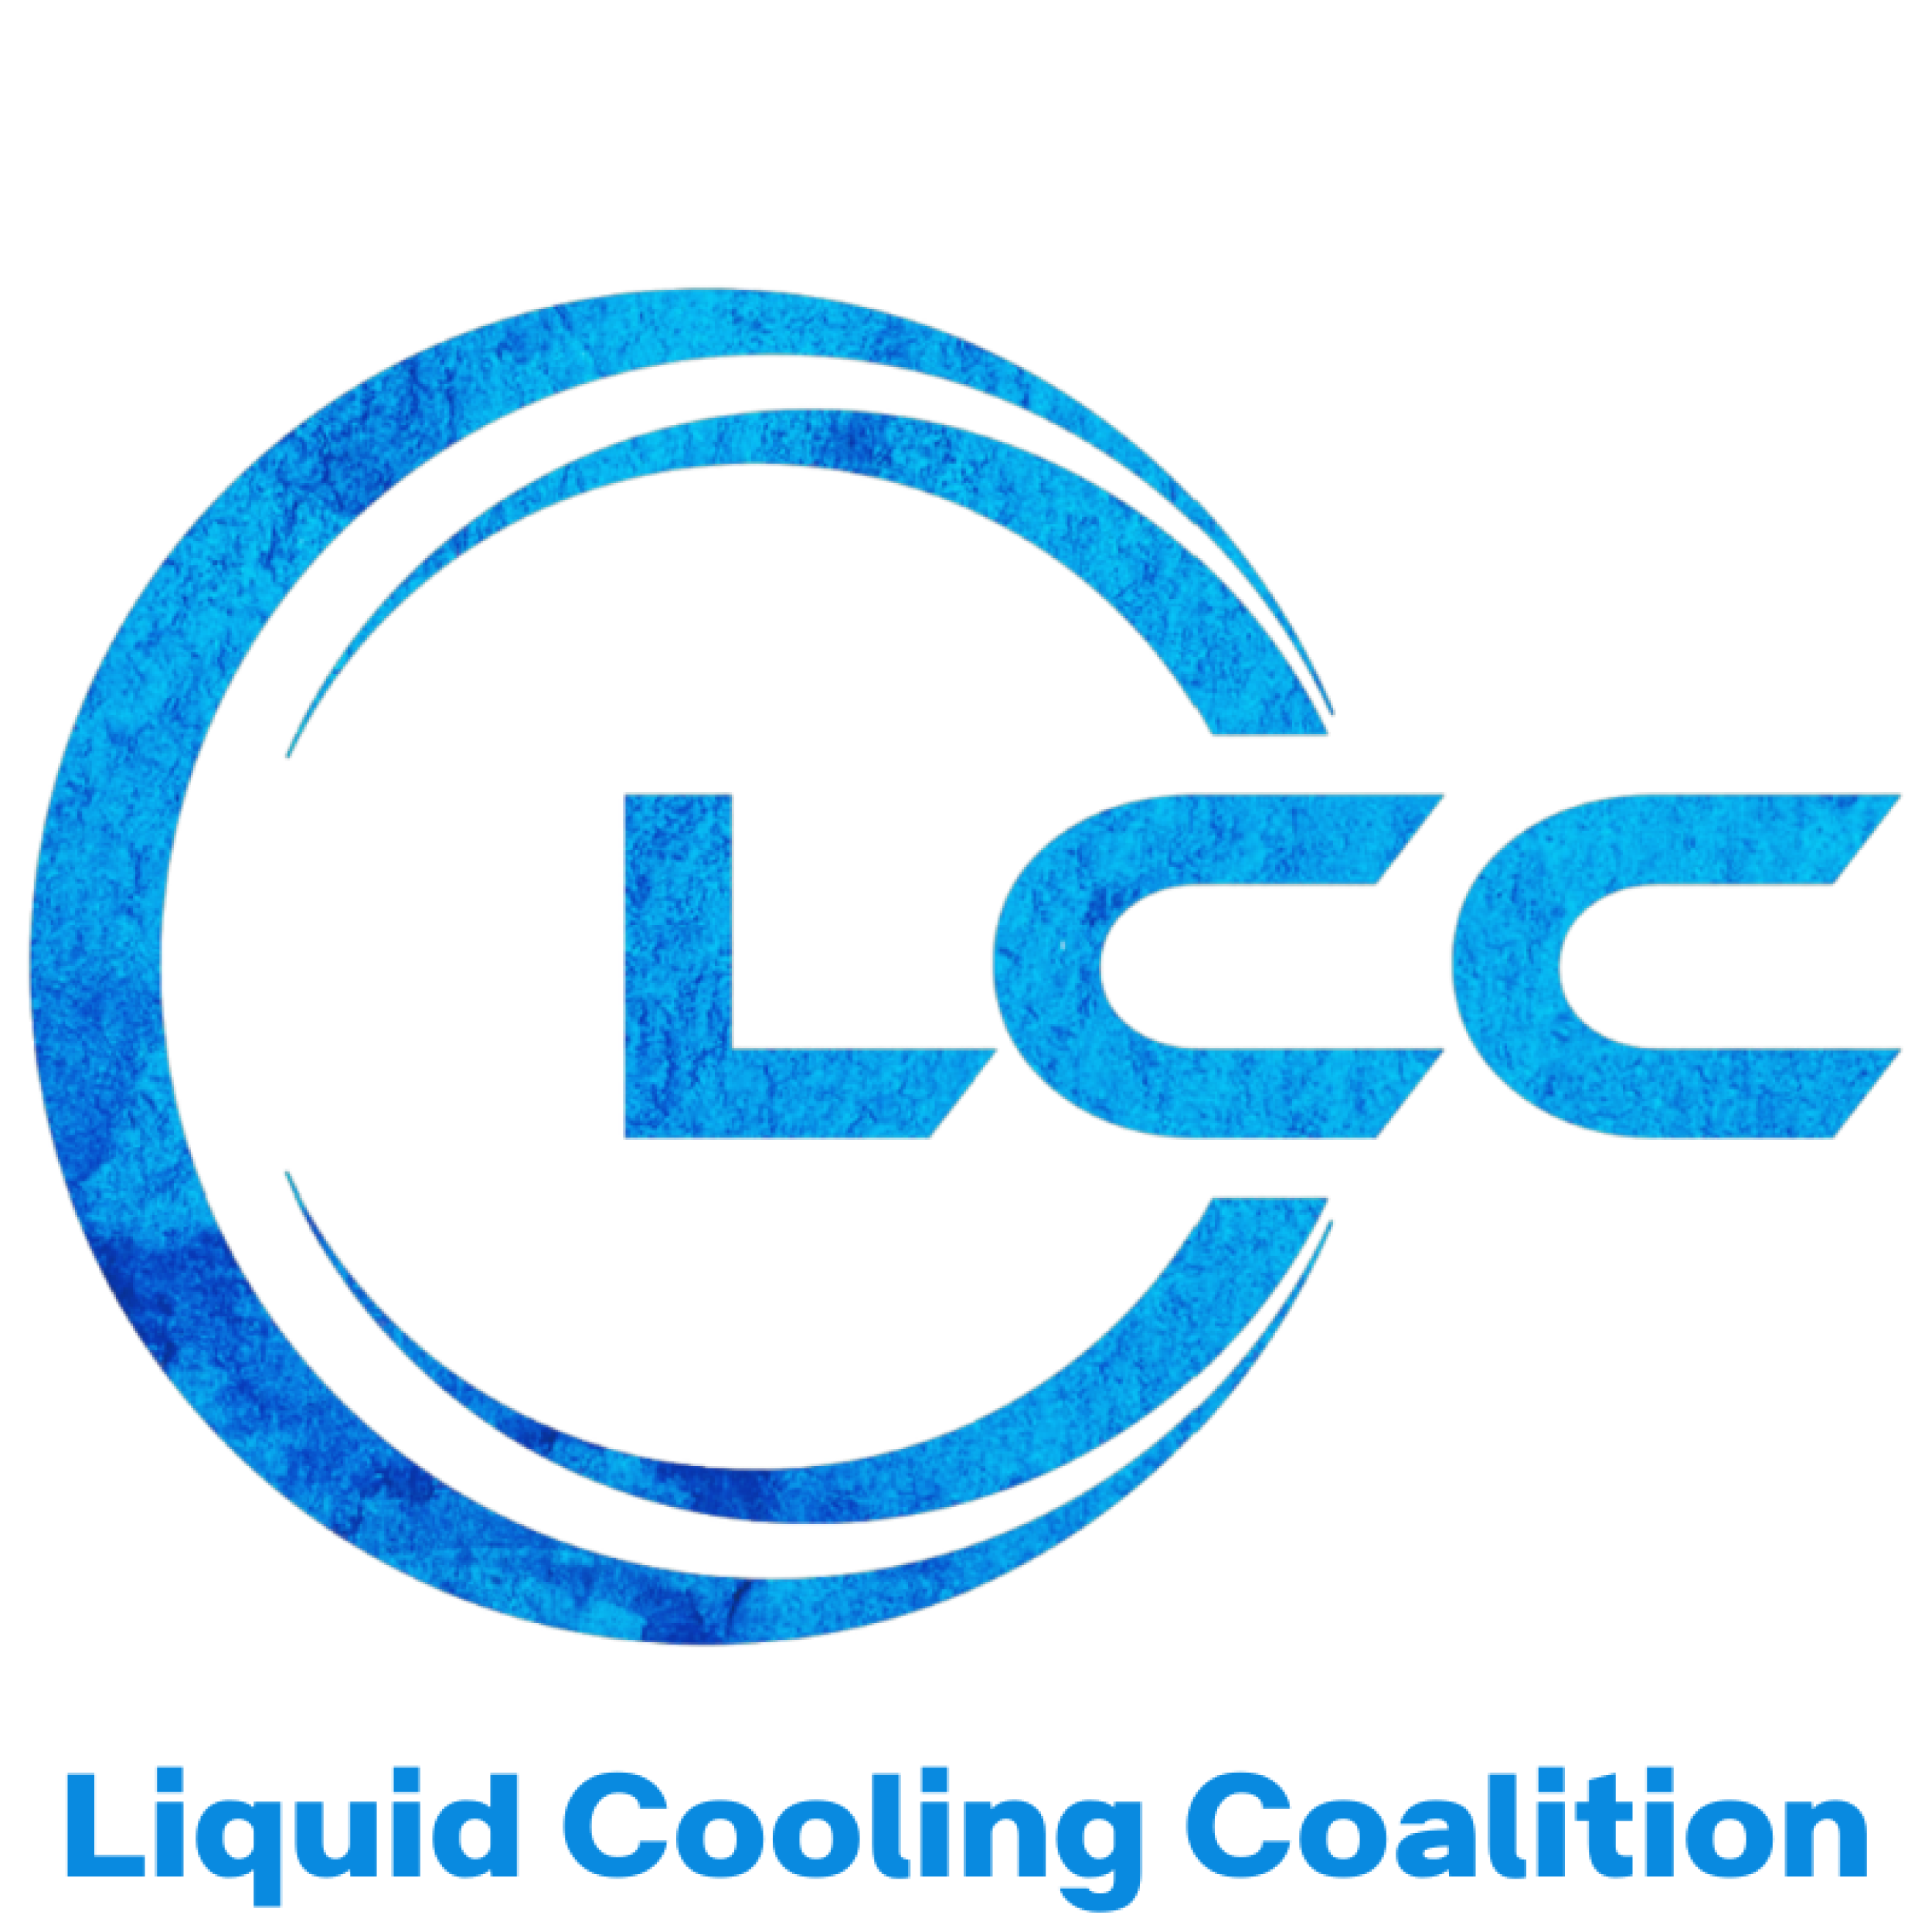 Liquid Cooling Coalition logo